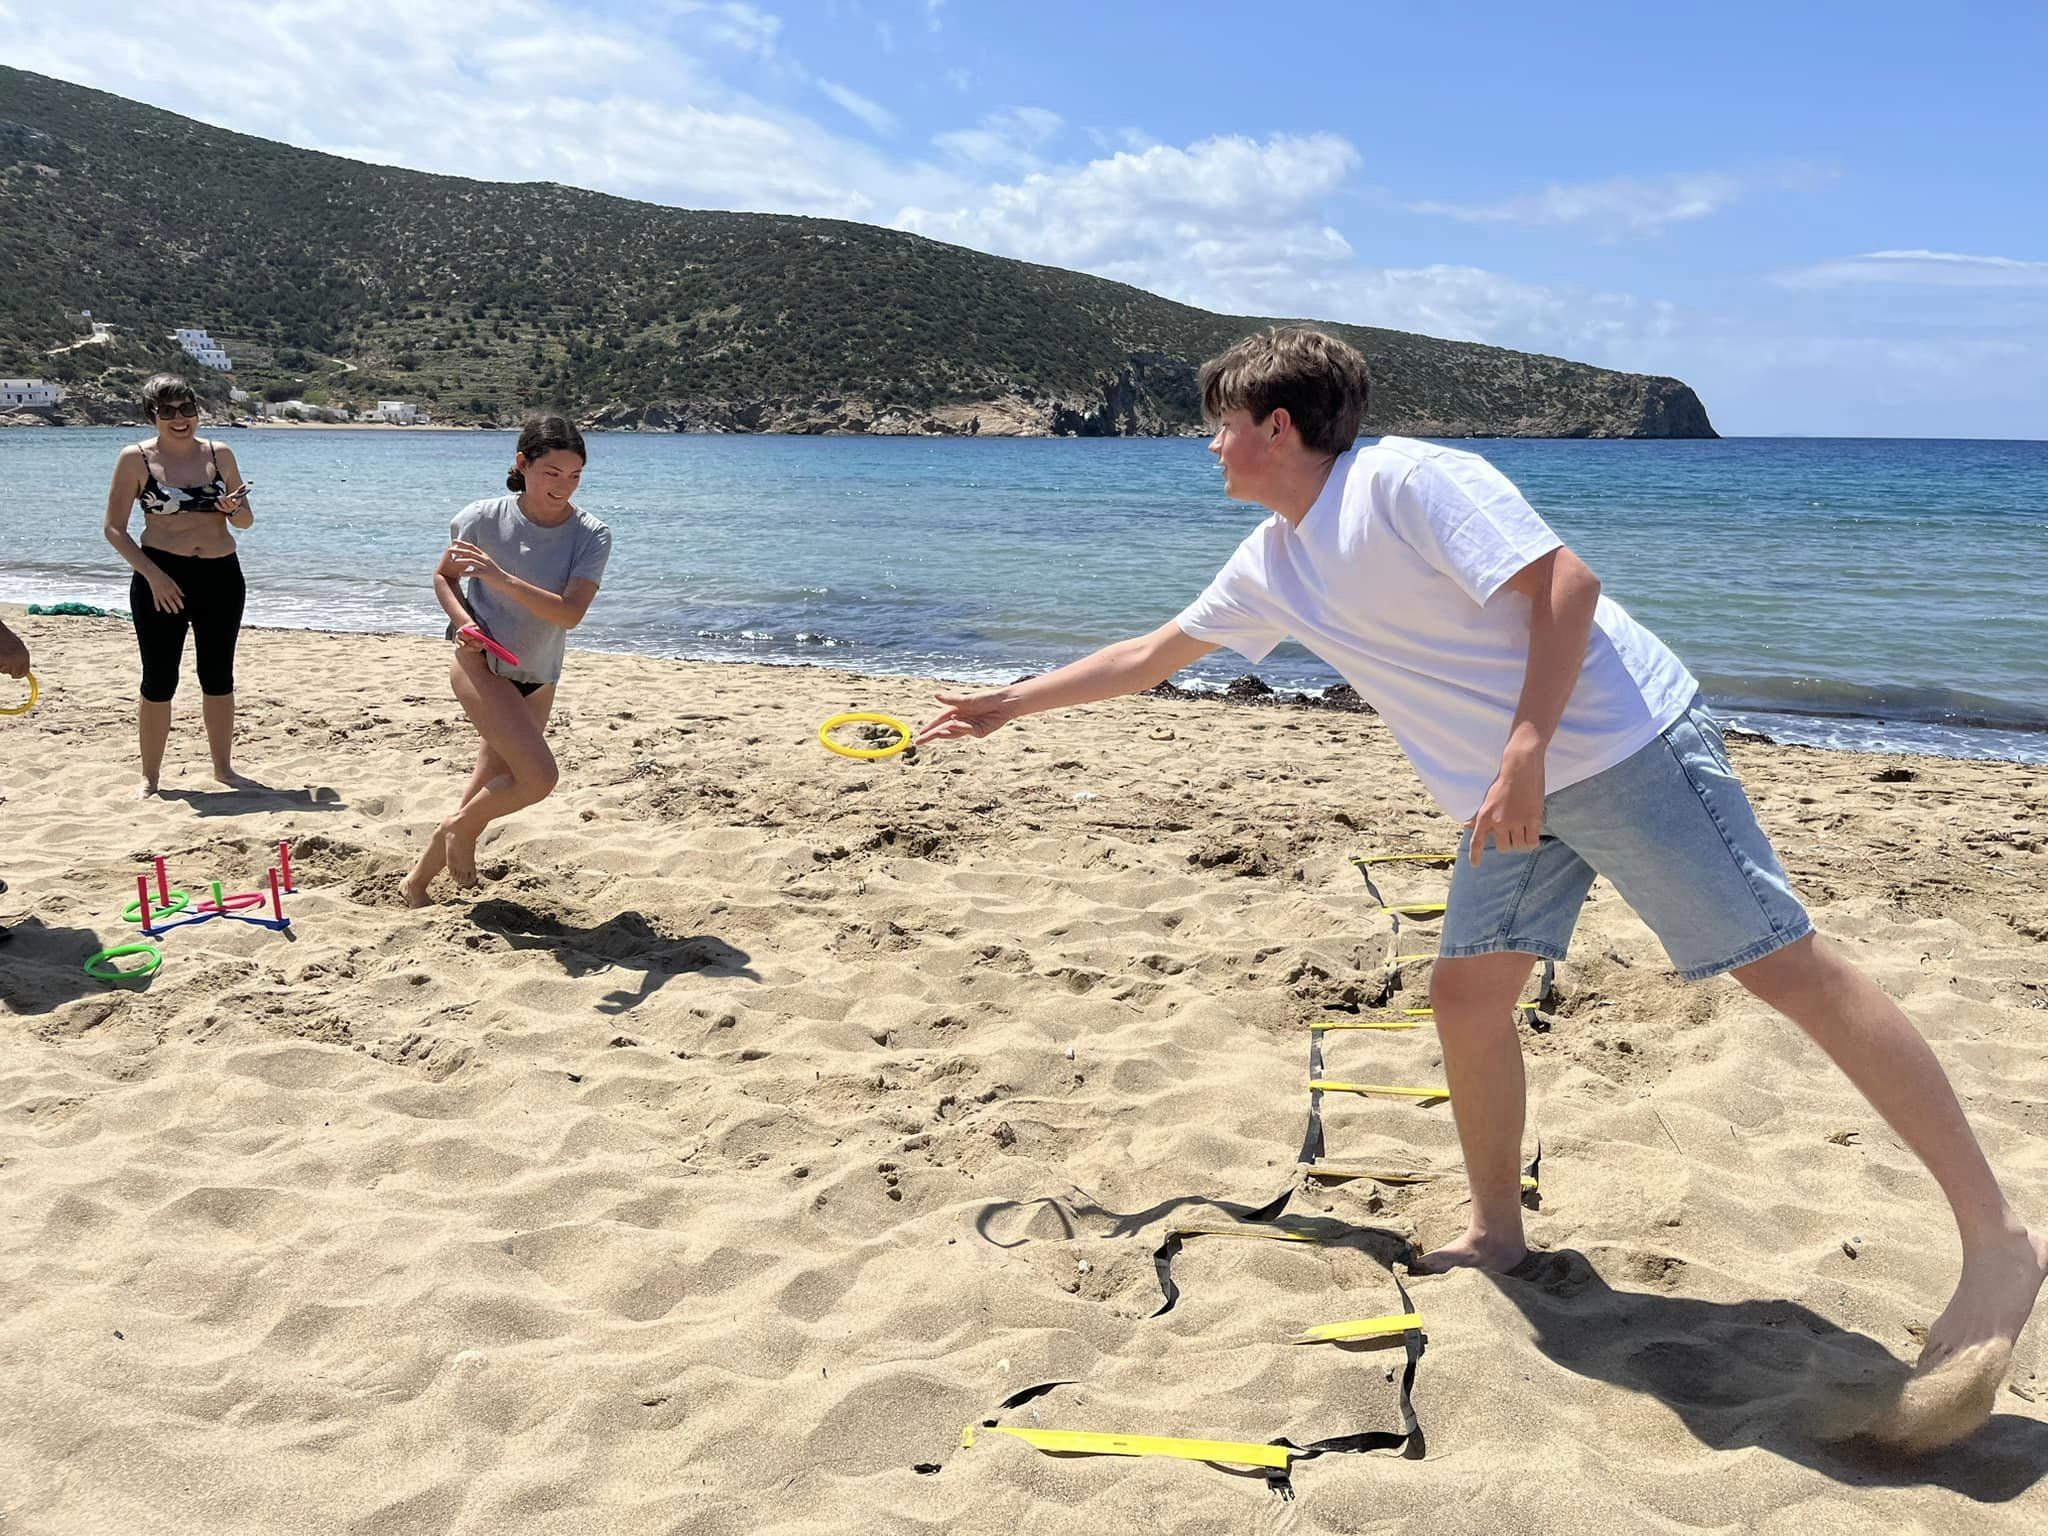 W dniach 14-21 kwietnia grupa 11 uczniów pod opieką p. Agnieszki Gemborys i p. Katarzyny Ścisłowicz spędziła wspaniałe chwile w Grecji na pięknej wyspie Sifnos. Wyjazd odbył się w ramach projektu Erasmus+ „Troskliwa Szkoła - Zjednoczeni w Różnorodności,”, zabawy na plaży